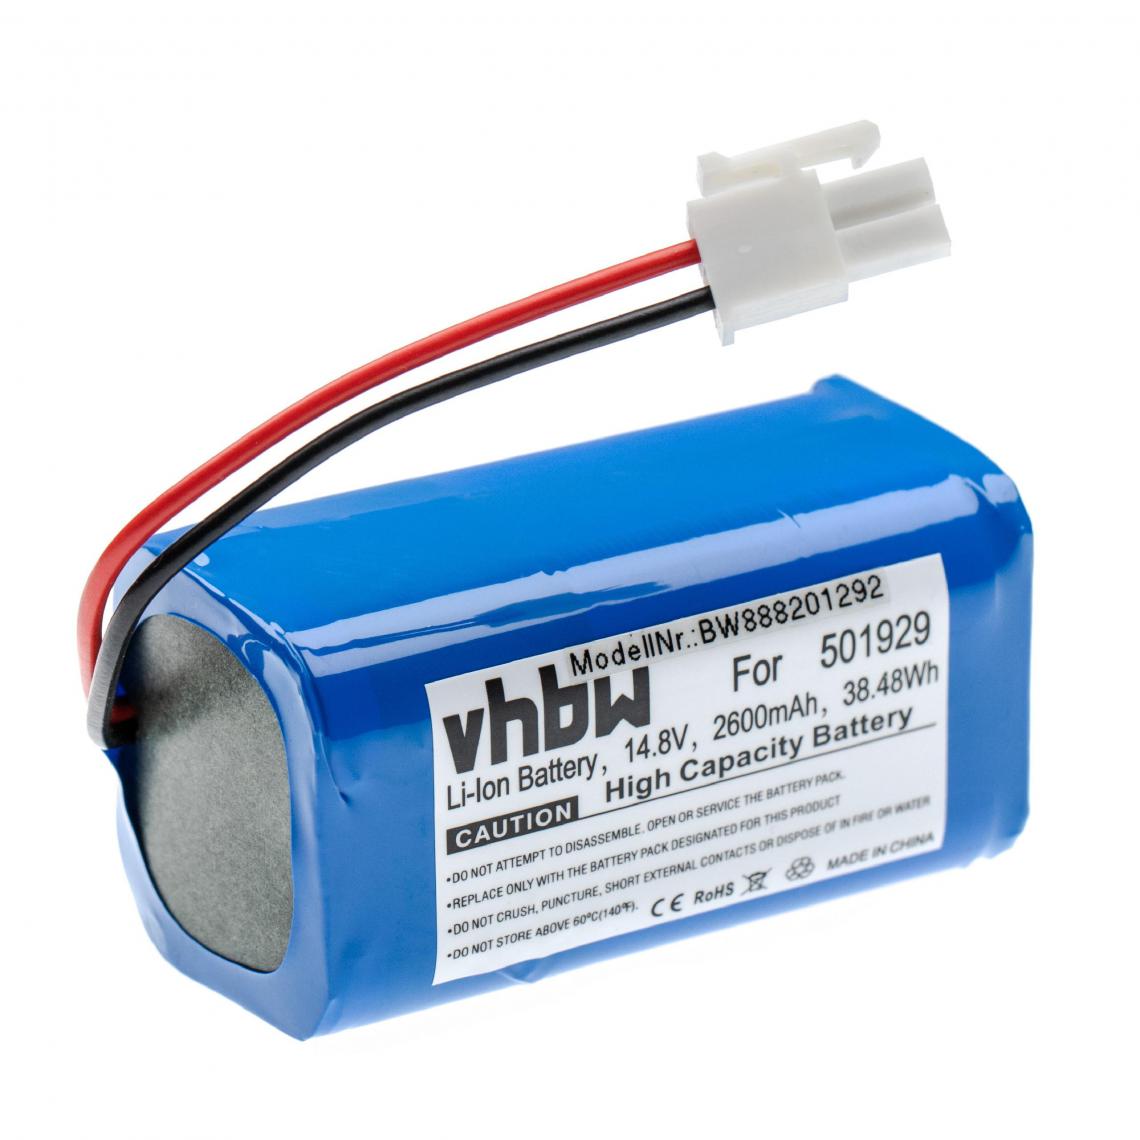 Vhbw - vhbw Batterie compatible avec Dibea V780 aspirateur, robot électroménager (2600mAh, 14,8V, Li-ion) - Accessoire entretien des sols